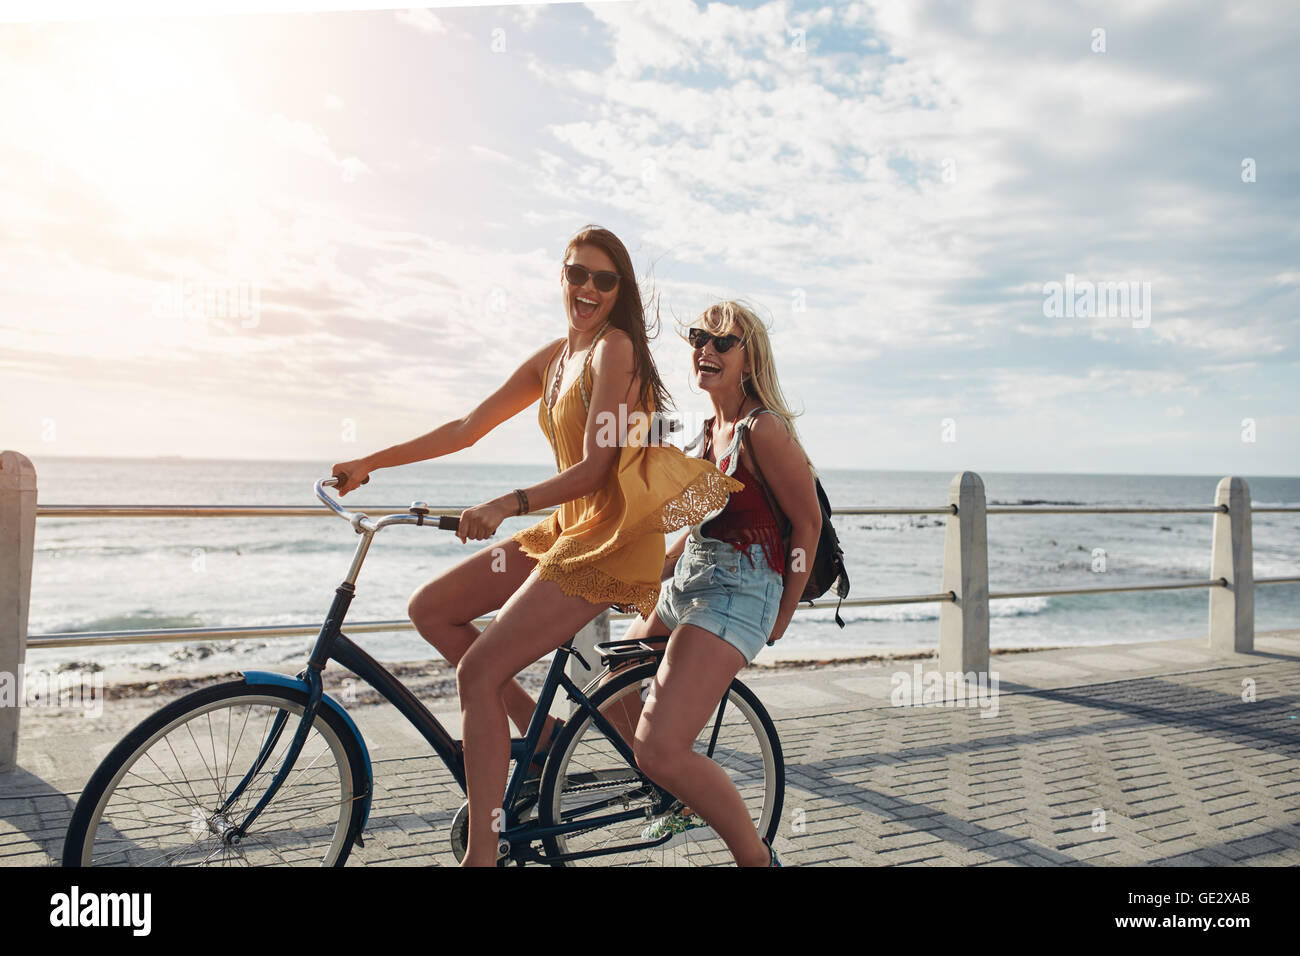 Zwei fröhliche junge Freundinnen auf einem Fahrrad. Beste Freunde genießen ein Fahrrad fahren an einem sonnigen Tag an der Uferpromenade. Stockfoto